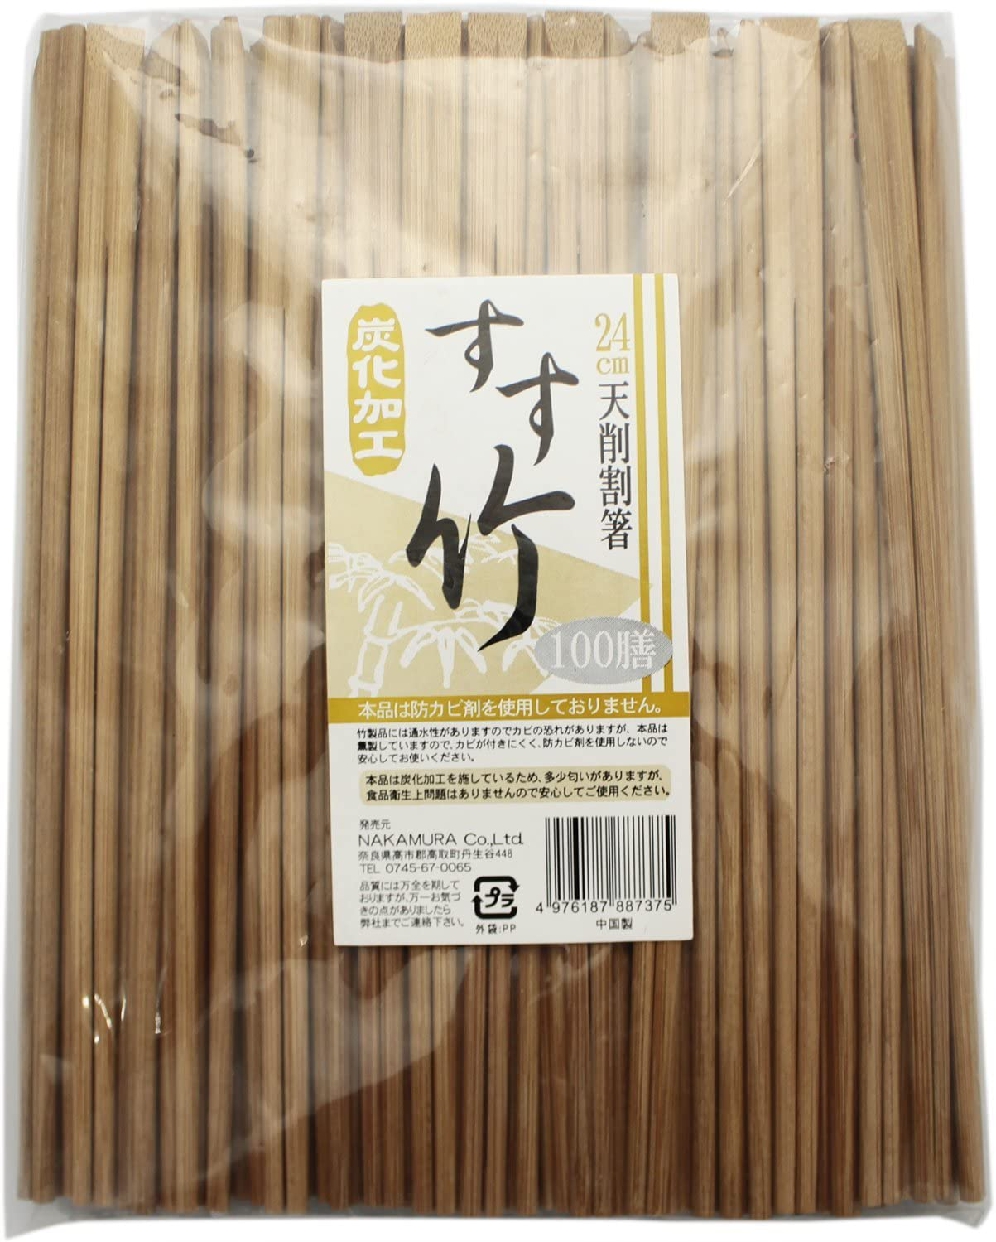 割り箸おすすめ商品：中村 割り箸 すす竹 天削 100膳 24cm